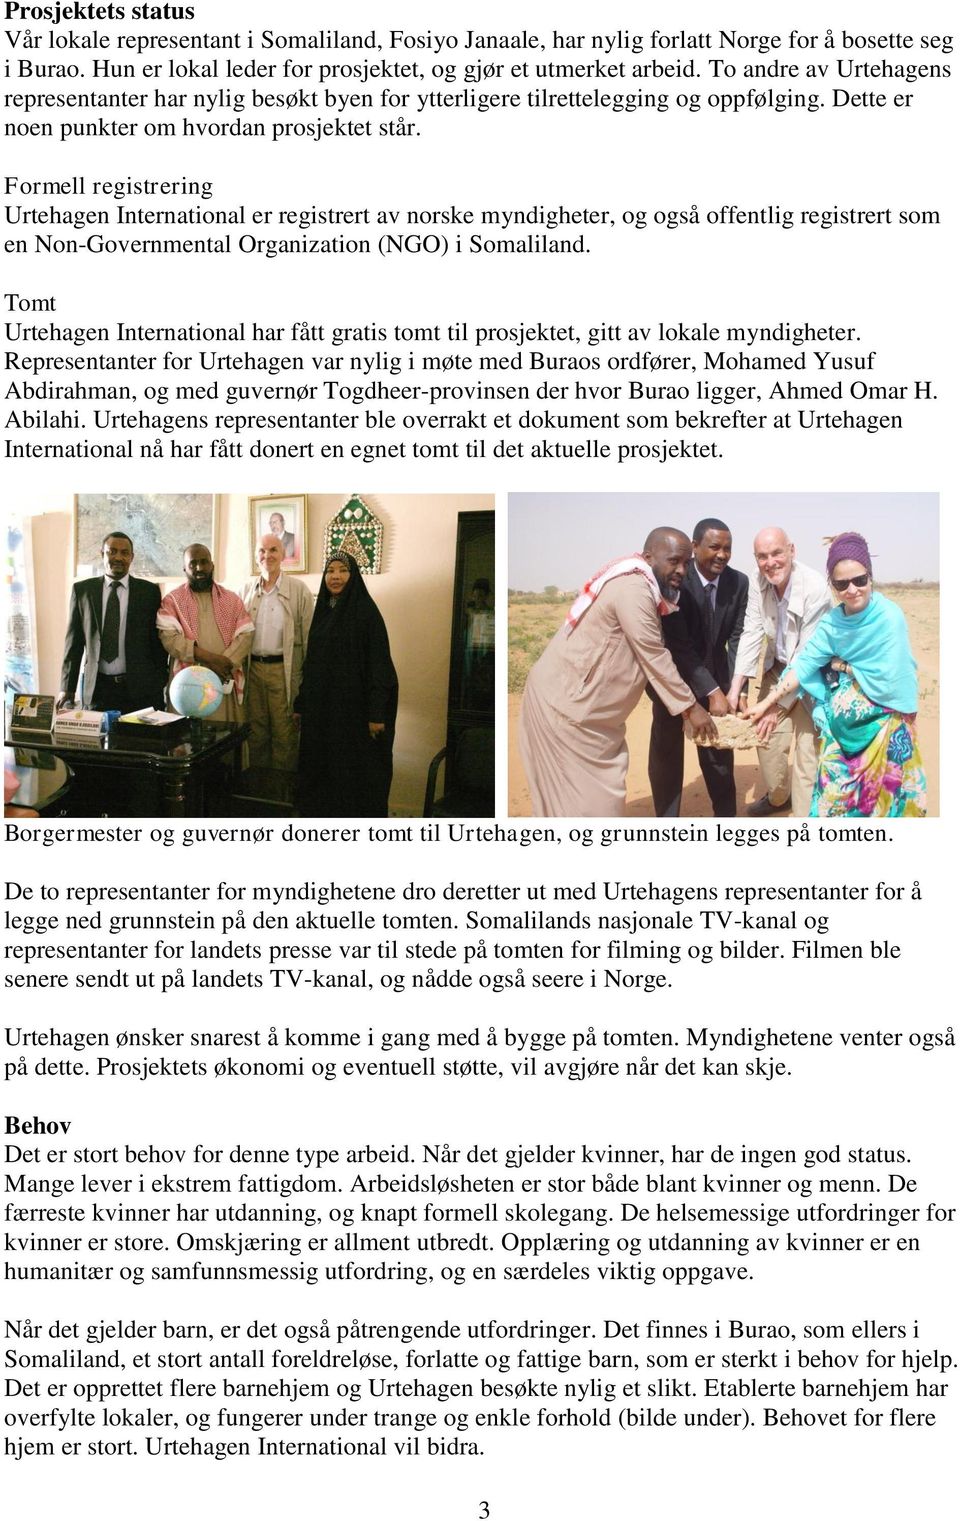 Formell registrering Urtehagen International er registrert av norske myndigheter, og også offentlig registrert som en Non-Governmental Organization (NGO) i Somaliland.